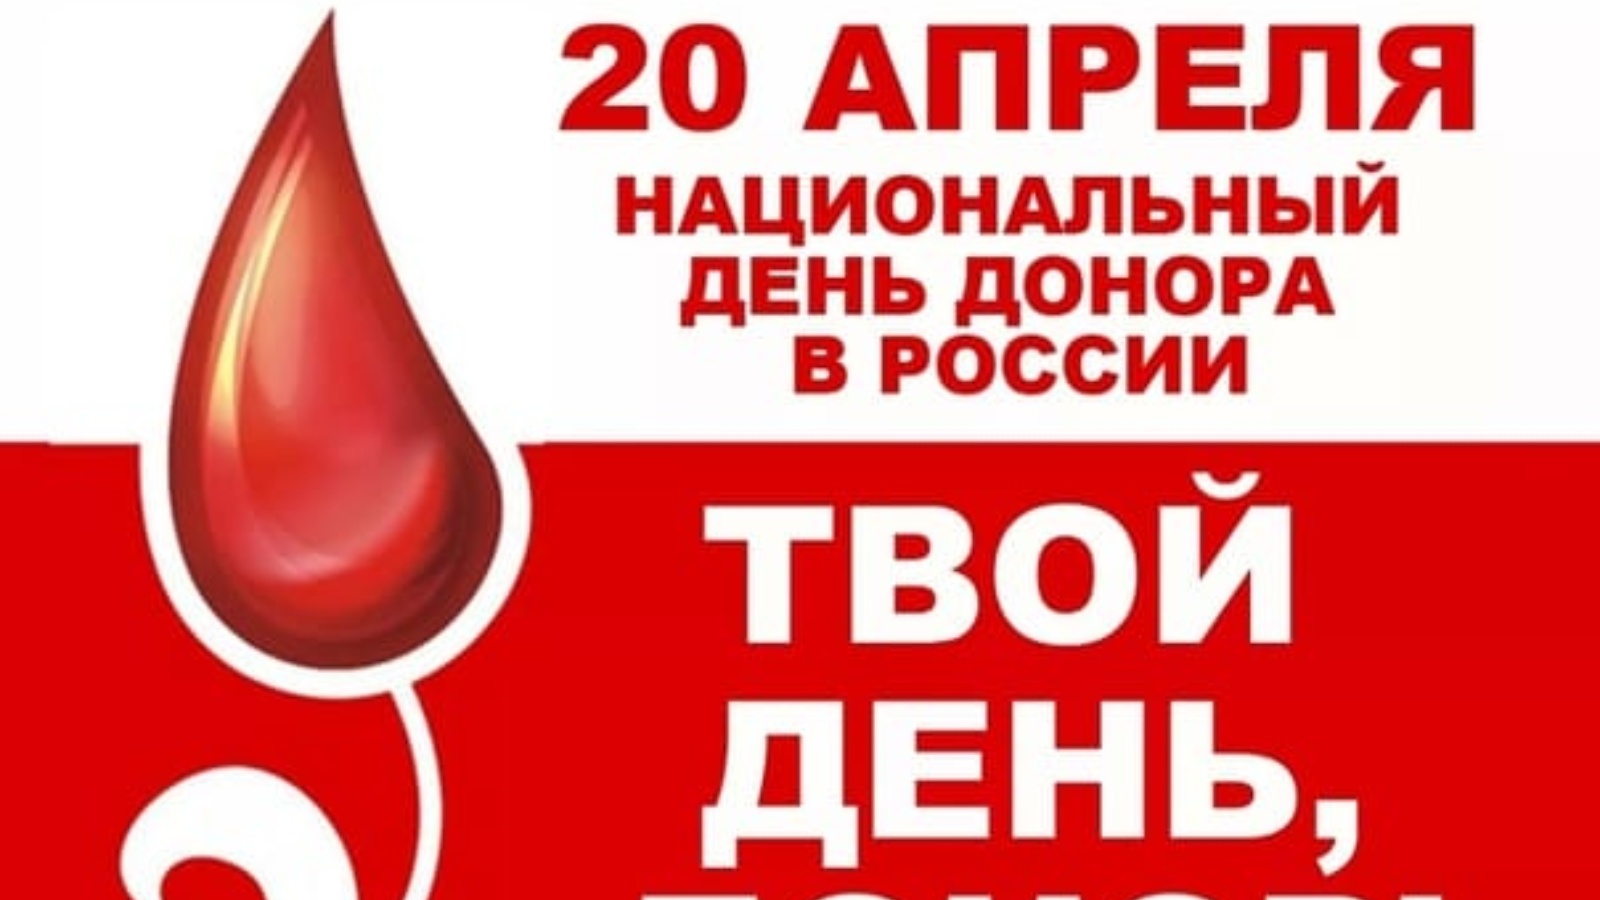 Национальный день донора крови. День донора. Национальный день донора в России. 20 Апреля национальный день донора в России. День донора с праздником.